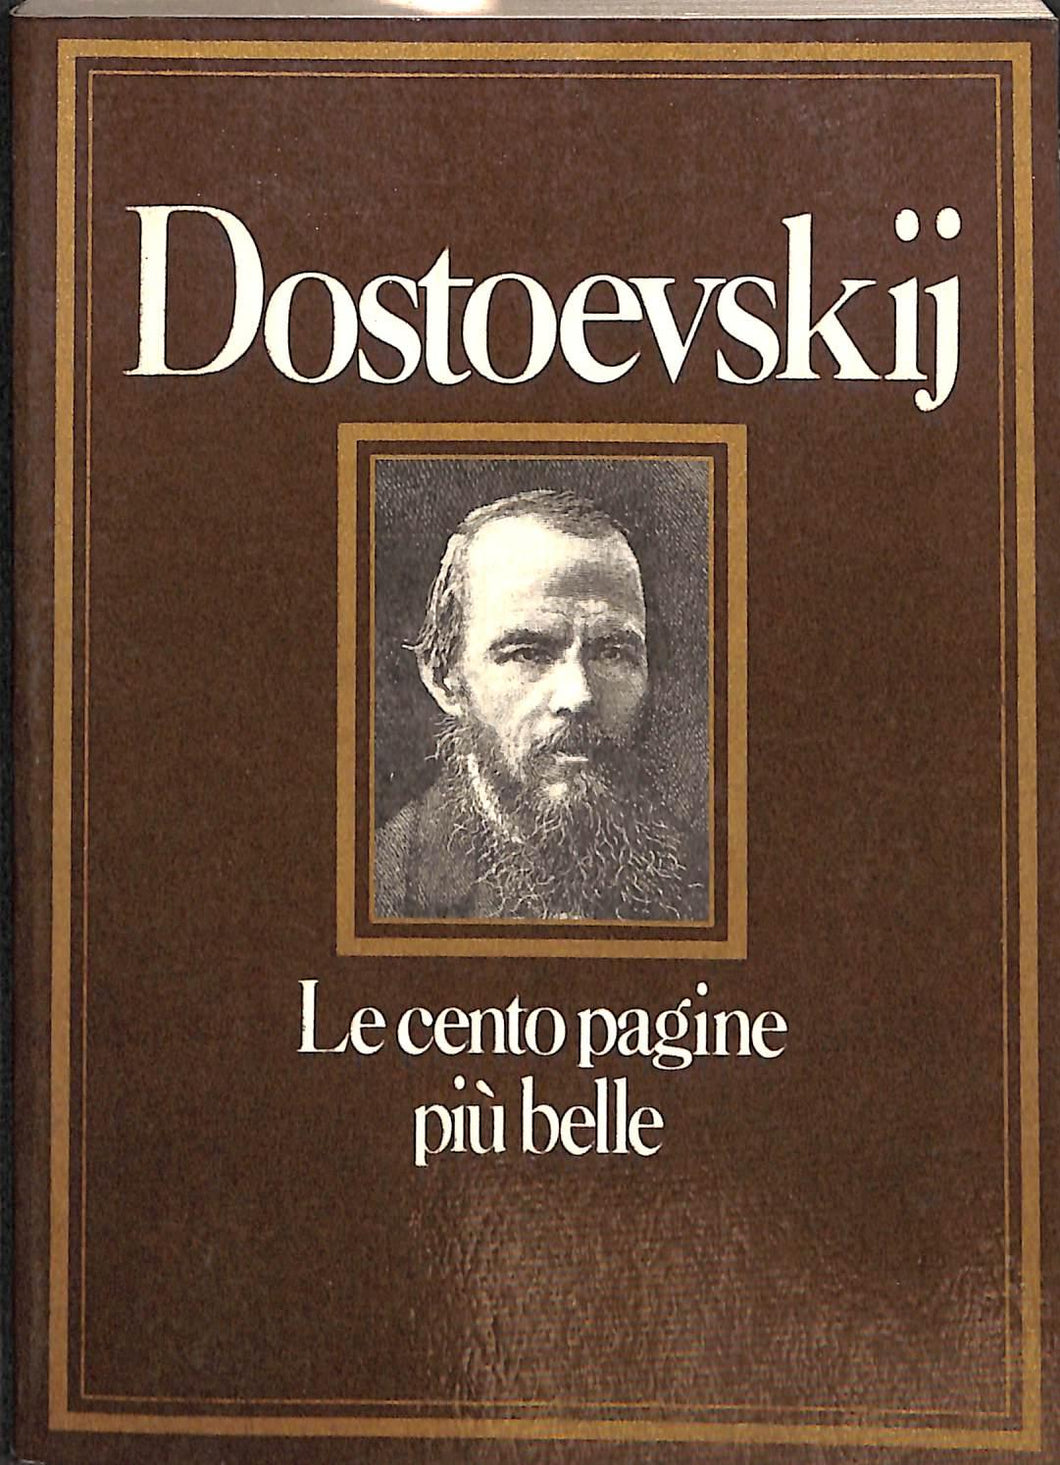 Le cento pagine più belle di Dostoevskij / a cura di Valentina Fortichiari